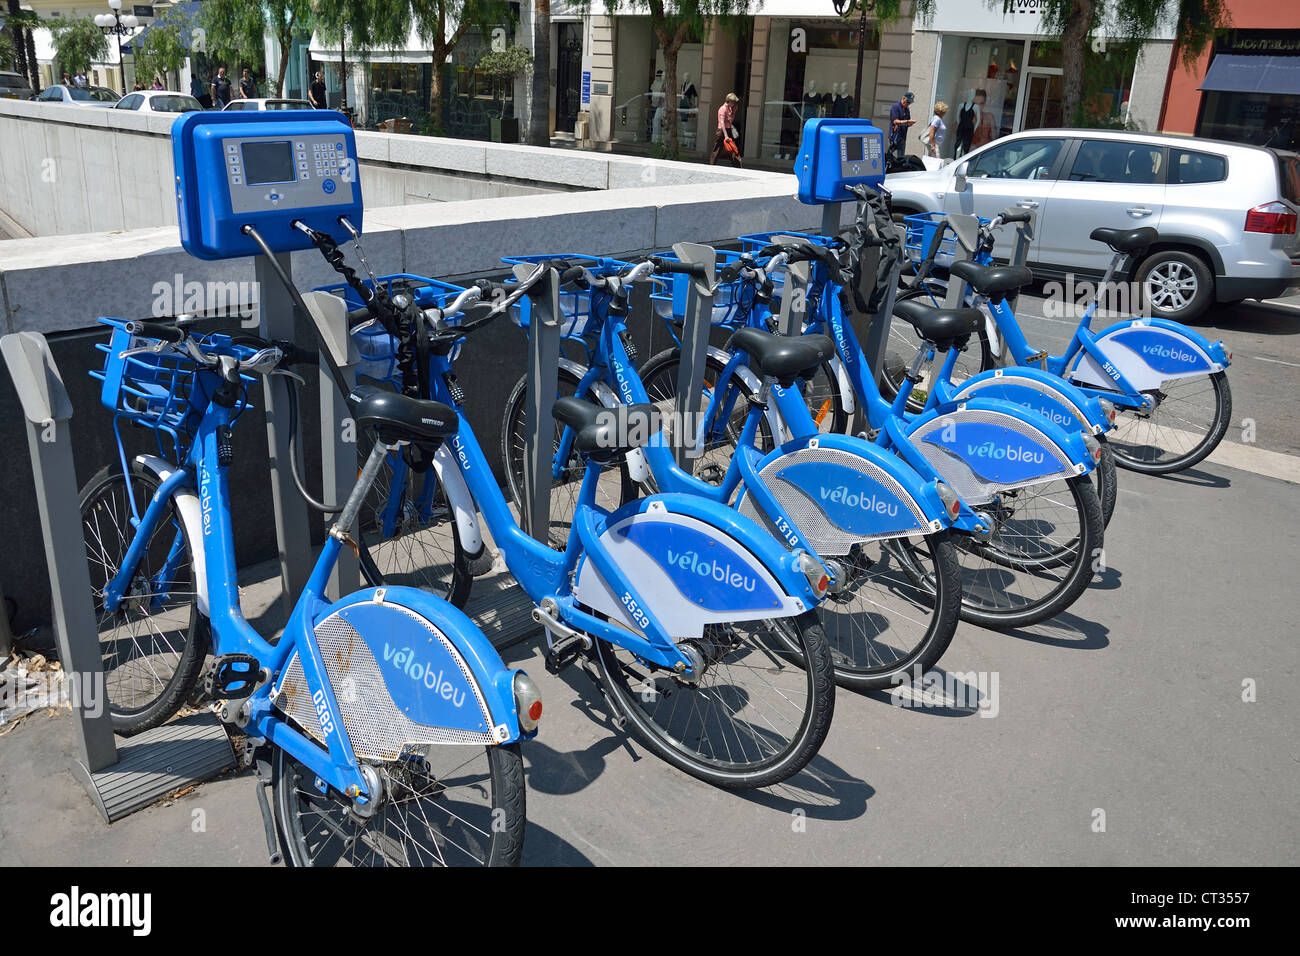 Vélo Bleu self-service bicycle station, Place Masséna, Nice, Côte d'Azur,  Alpes-Maritimes, Provence-Alpes-Côte d'Azur, France Stock Photo - Alamy